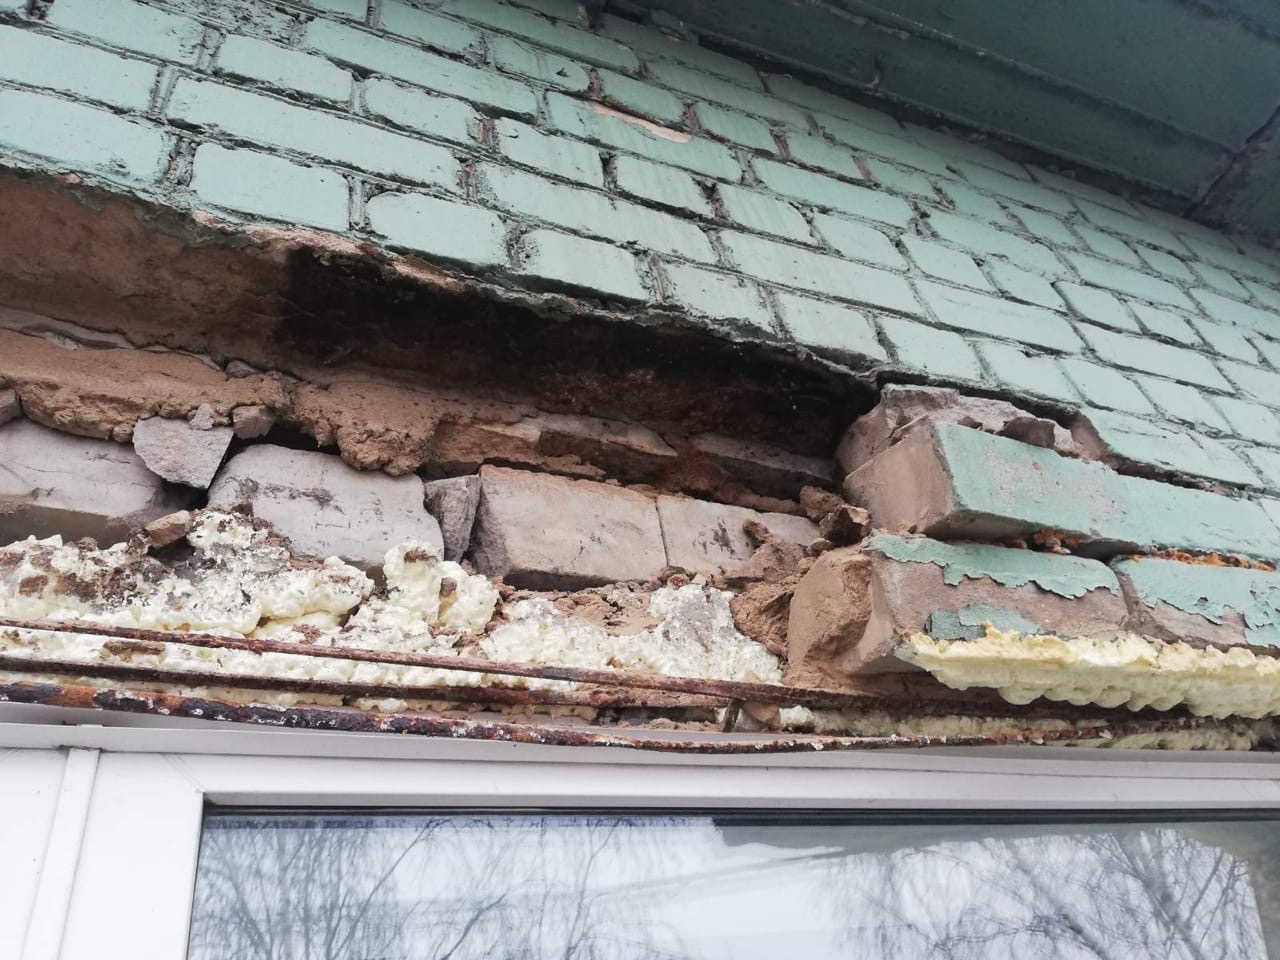 "Кирпичи чудом не упали на голову": в Кирове обрушилась стена жилого дома